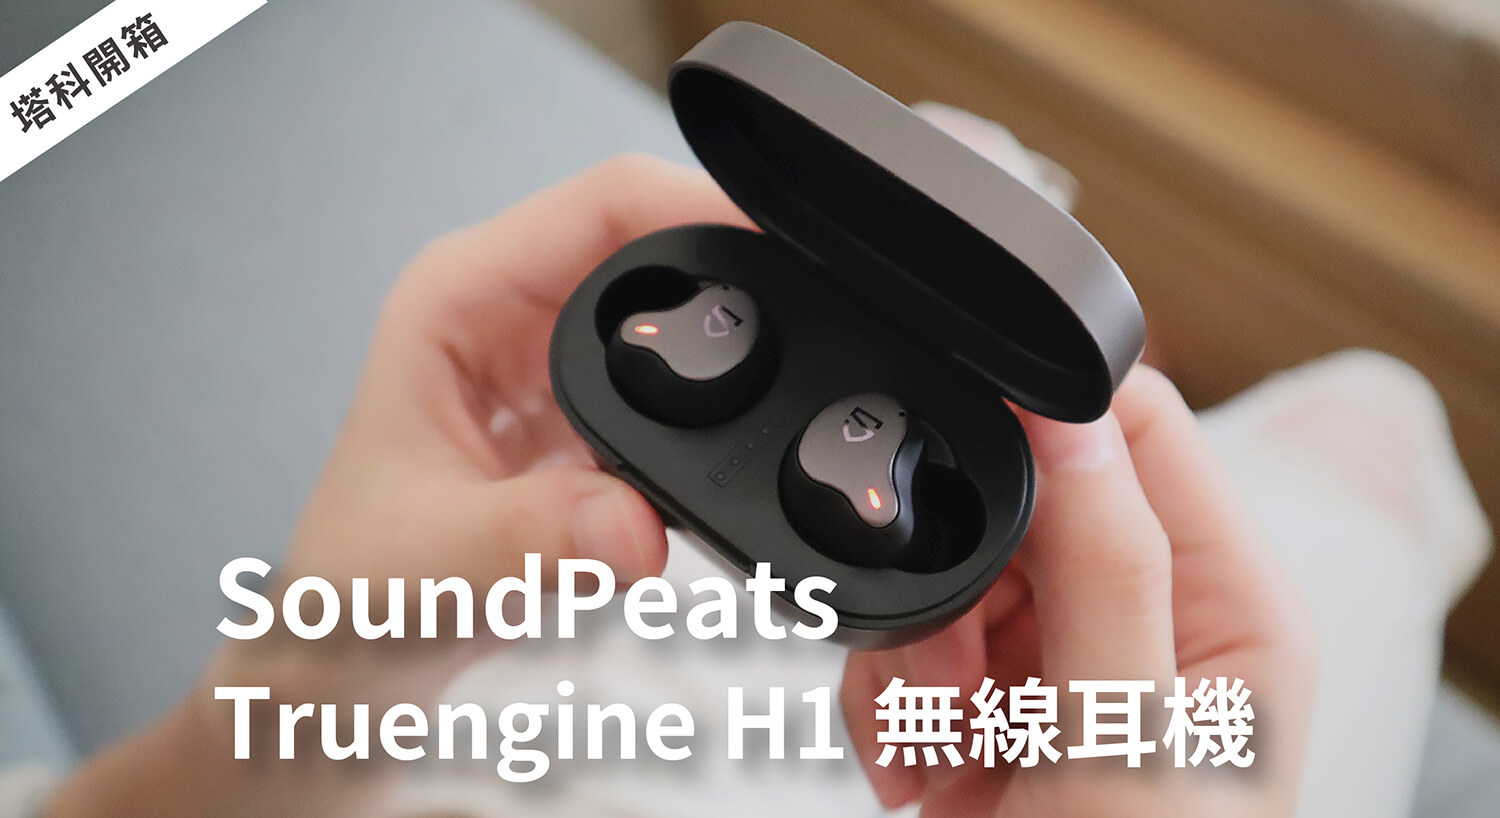 開箱／SoundPeats Truengine H1 圈鐵雙單體無線耳機，雙倍震撼立體聽感，支援超低延遲遊戲模式！